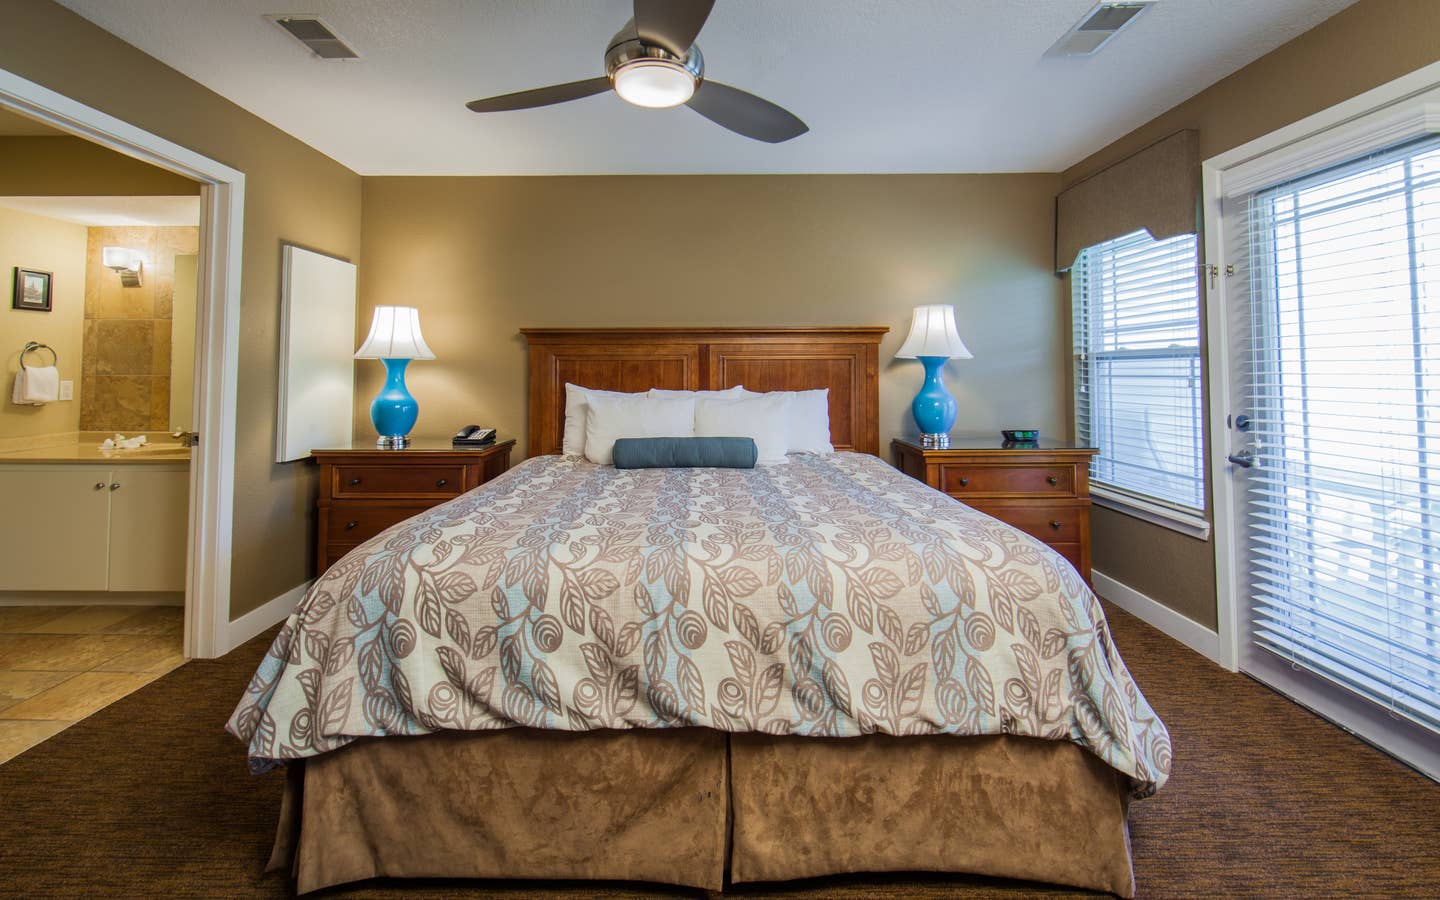 Bedroom in a two-bedroom ambassador villa at the Holiday Hills Resort in Branson Missouri.